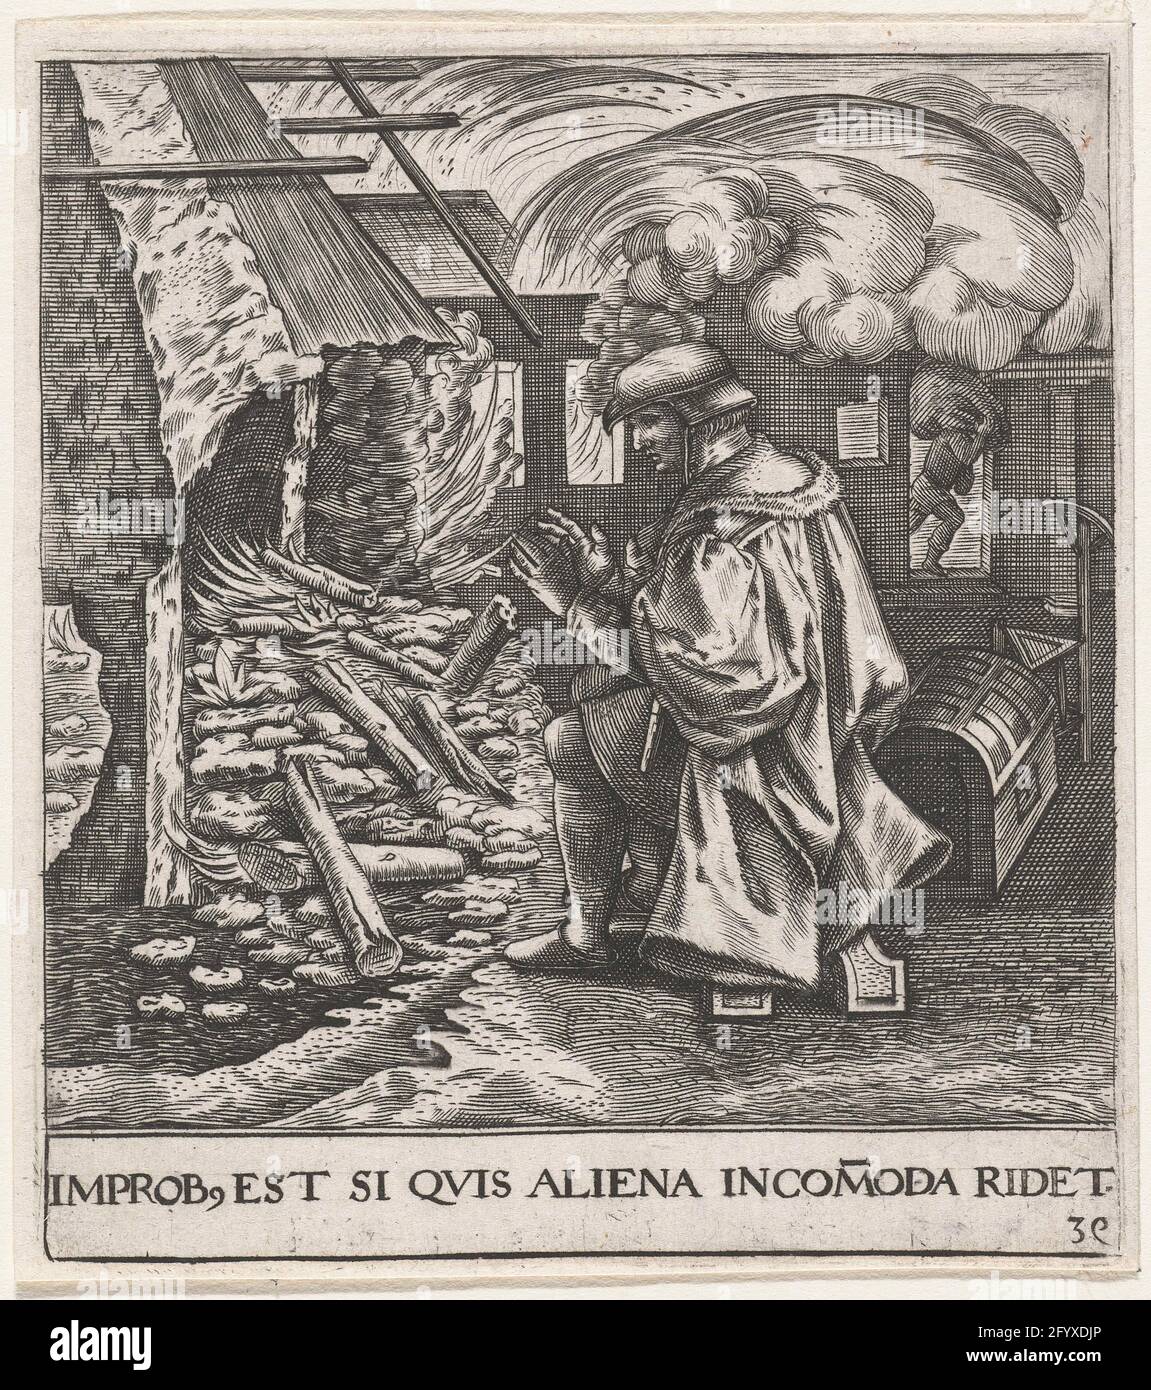 L'homme se réchauffe dans une maison en feu; Improb, est si quis Aliena Incomoda Ridet; Emblemata Saecularia, 1596. Un homme se réchauffe au feu d'une maison en feu. Vers l'un des proverbes ronds de Bruegel:" il est lui et beaucoup de dont la maison brûle, quand il se réchauffe au charbon, "avec lequel Bruegel a voulu mettre à la maison et la mâchoire ondulée. Banque D'Images